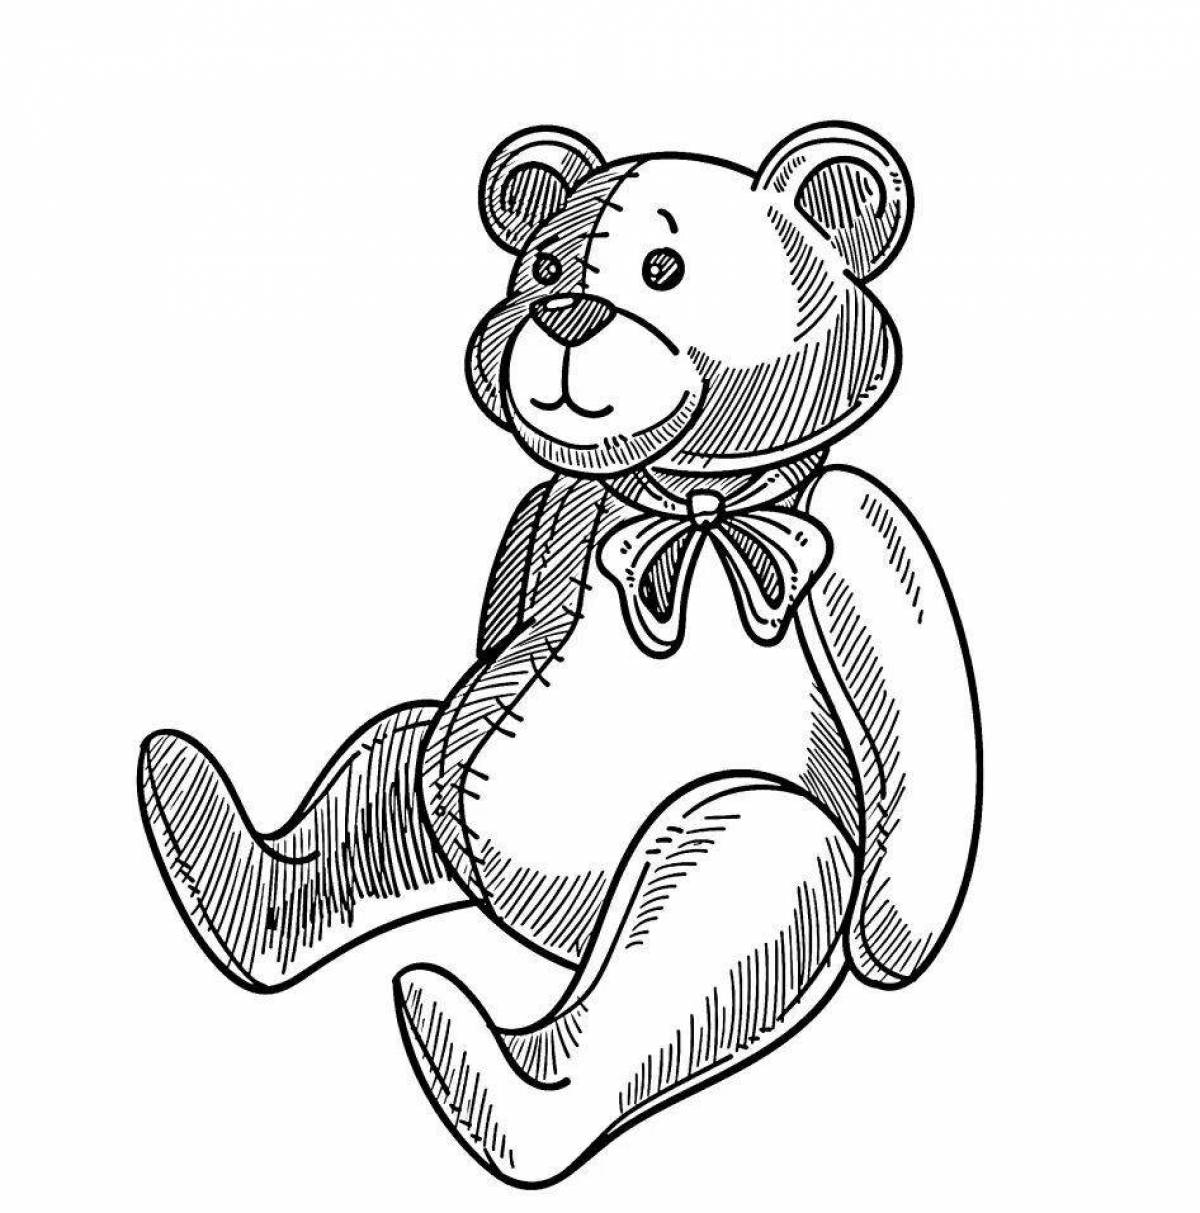 Сказочная раскраска медведя для детей 2-3 лет